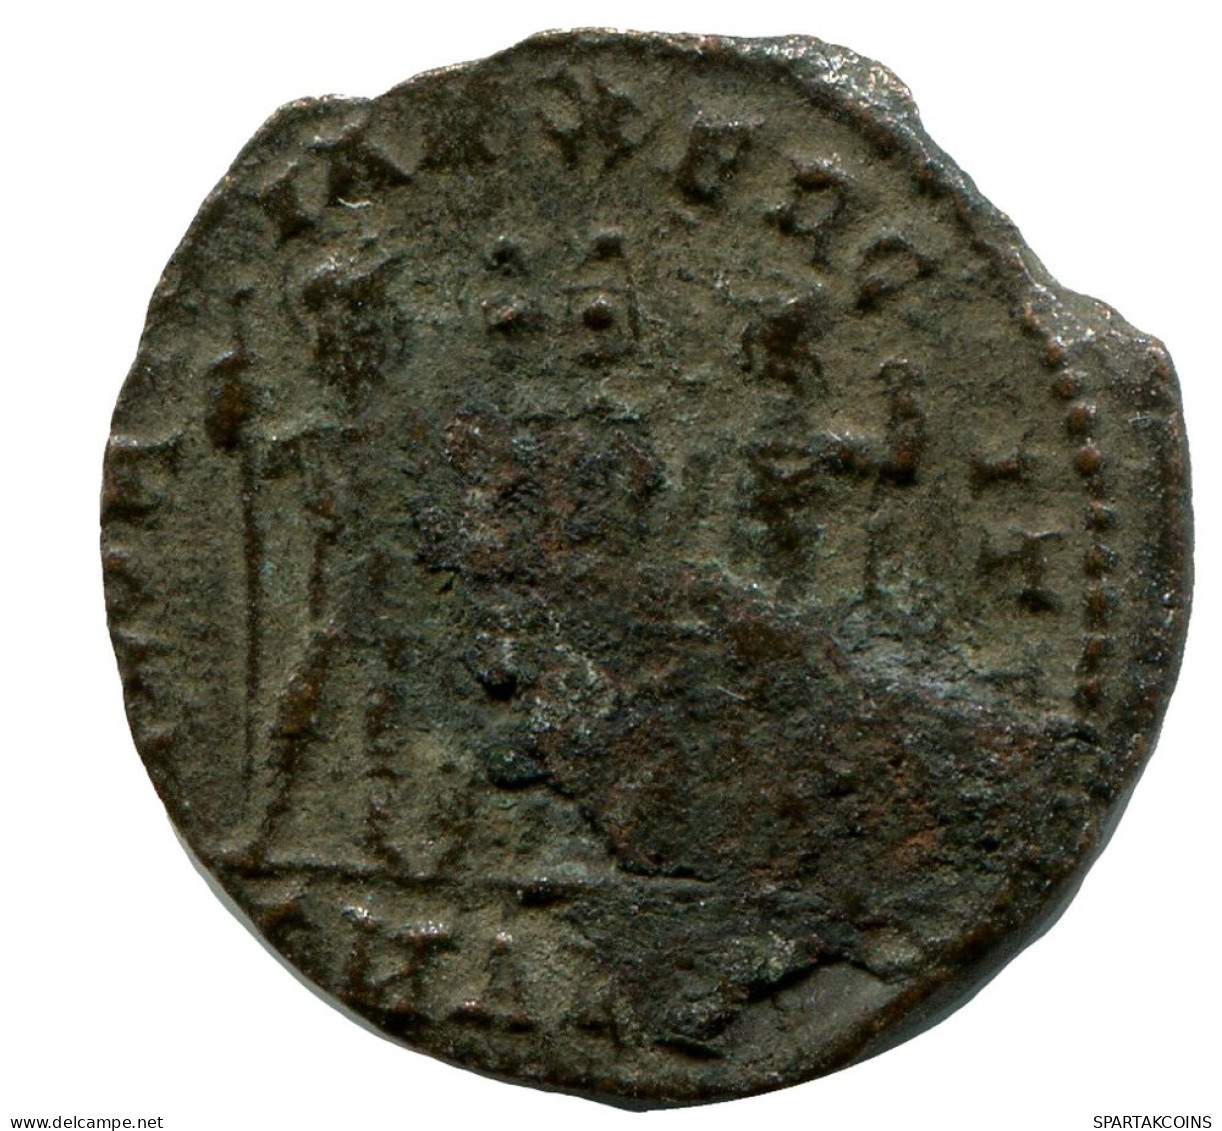 CONSTANTIUS II MINTED IN ALEKSANDRIA FOUND IN IHNASYAH HOARD #ANC10435.14.E.A - L'Empire Chrétien (307 à 363)